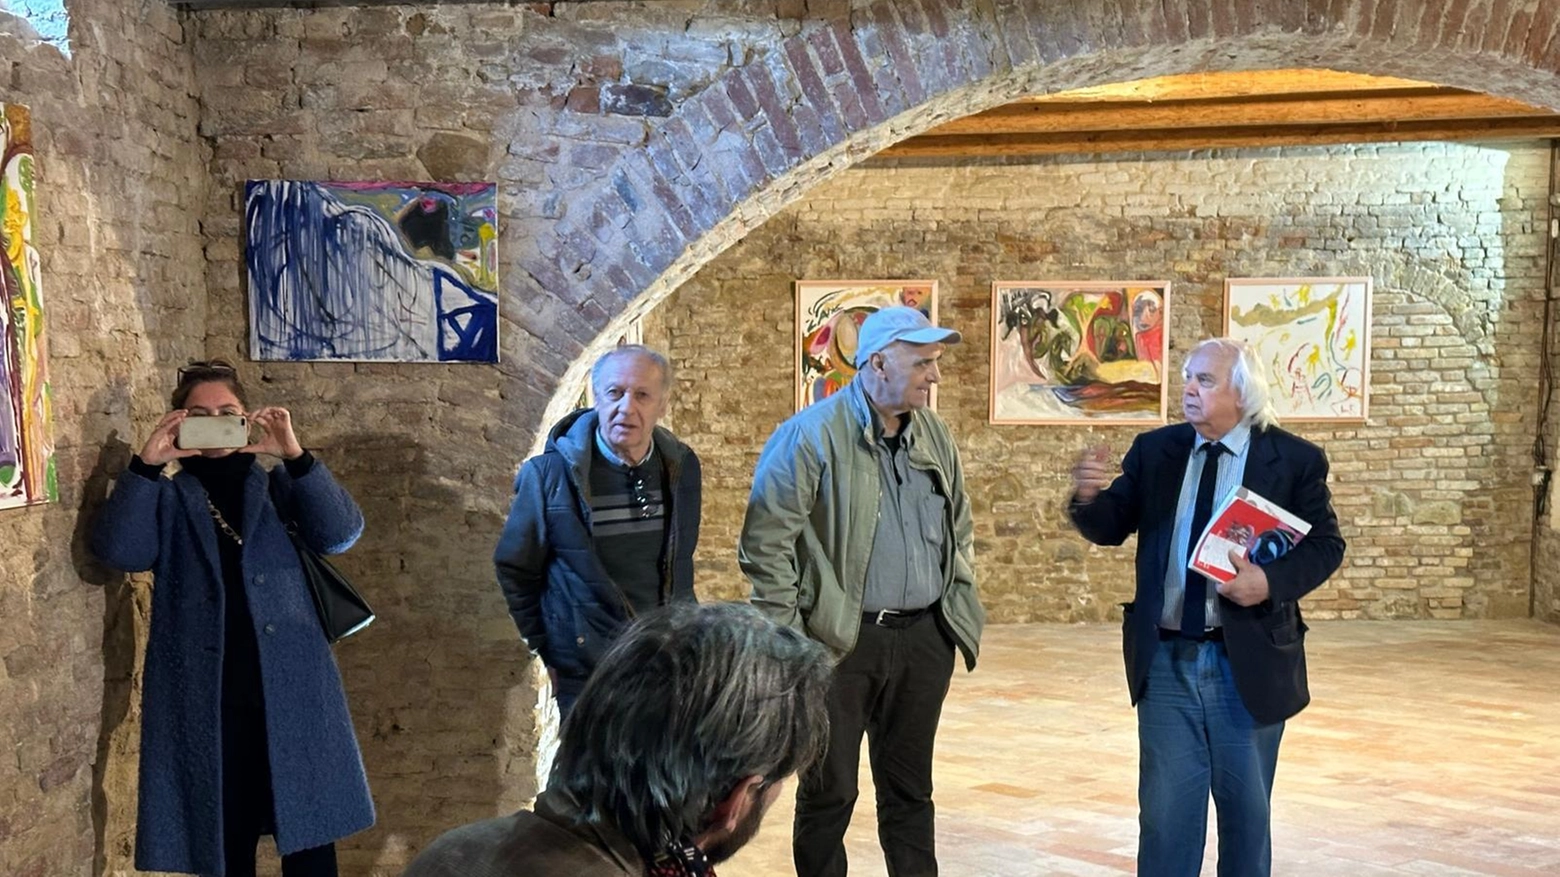 Palazzo Del Monte riparte dall’energia delle opere di Franco Lorenzetti